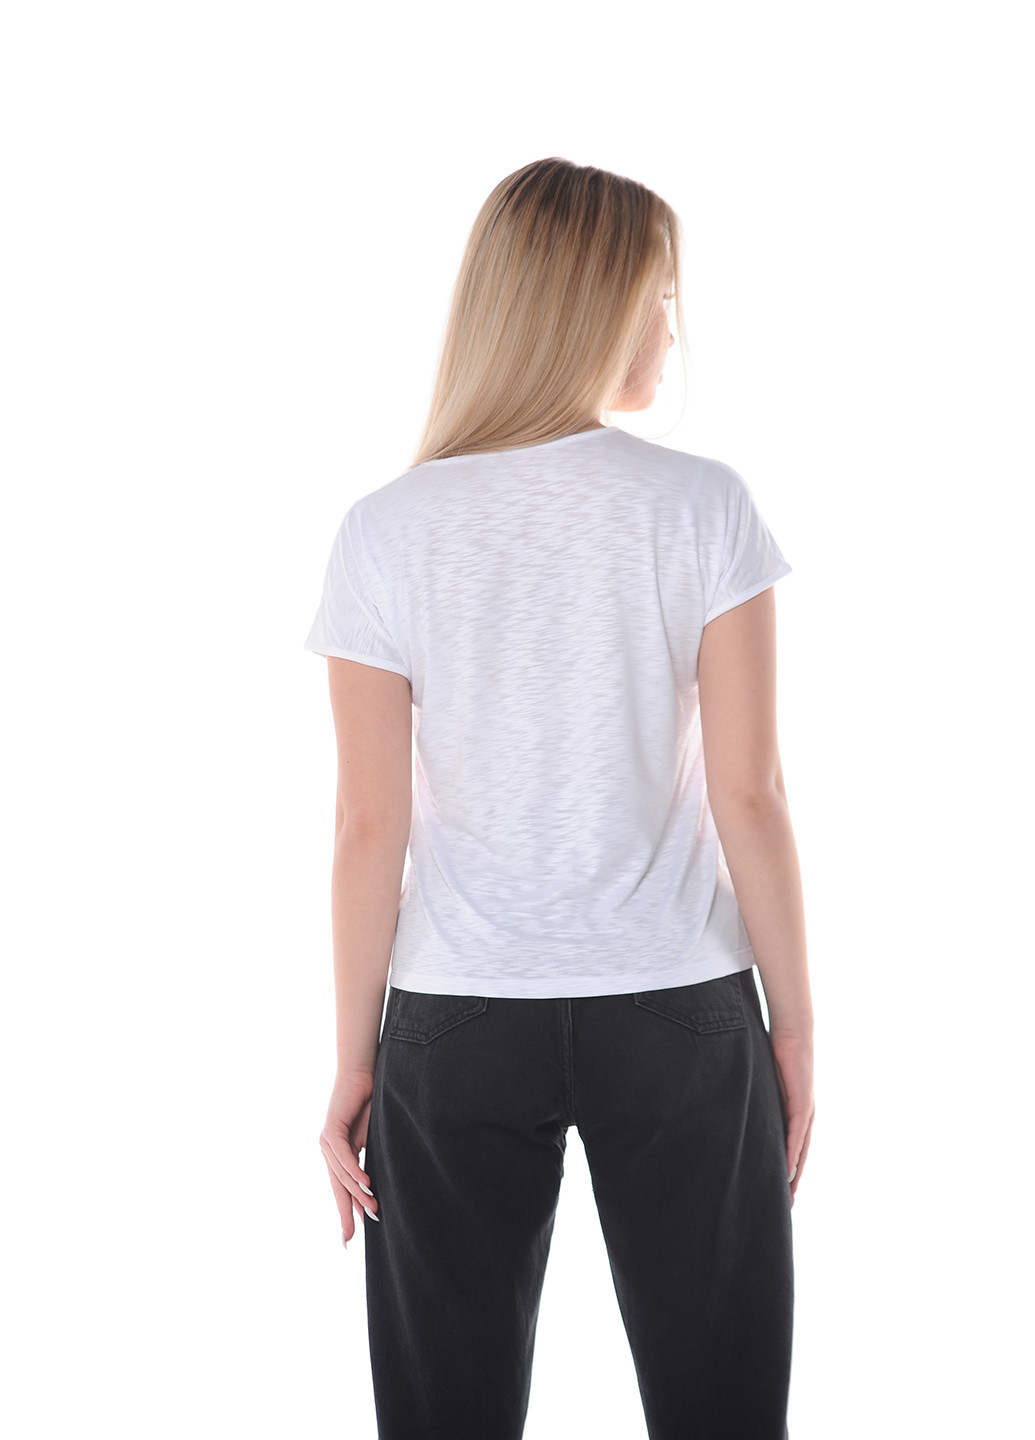 Белая всесезон футболка женская Наталюкс 80-2350